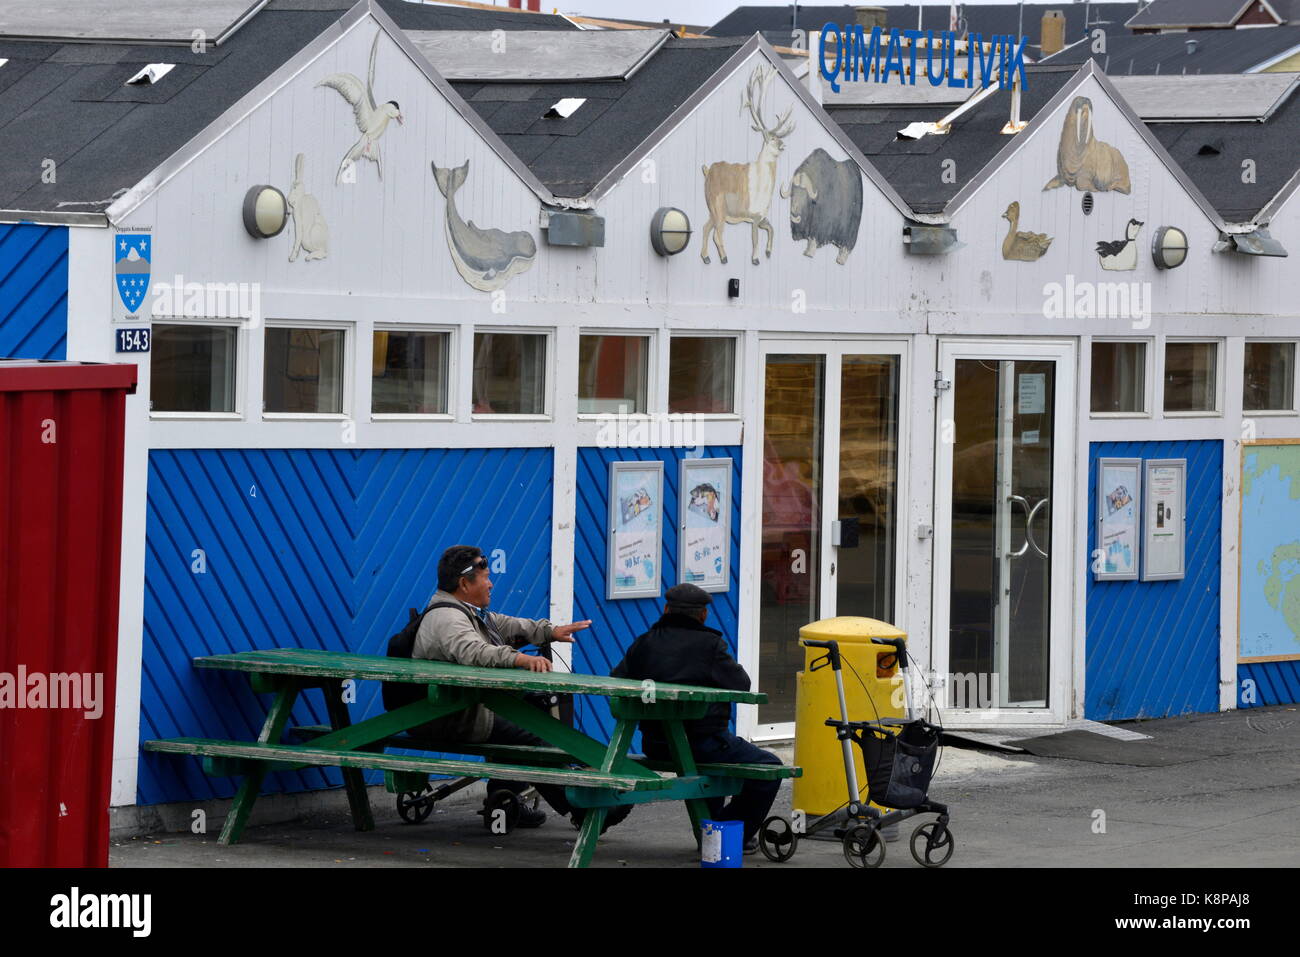 Men's chat en face de la boutique de viande et de poisson dans la ville de sisimiut, sur la côte ouest du Groenland. c'est le deuxième plus grand du pays, située dans un paysage montagneux, à 75 kilomètres au nord du cercle polaire. prises 16.08.2017. photo : karlheinz schindler/dpa-zentralbild/zb | conditions dans le monde entier Banque D'Images